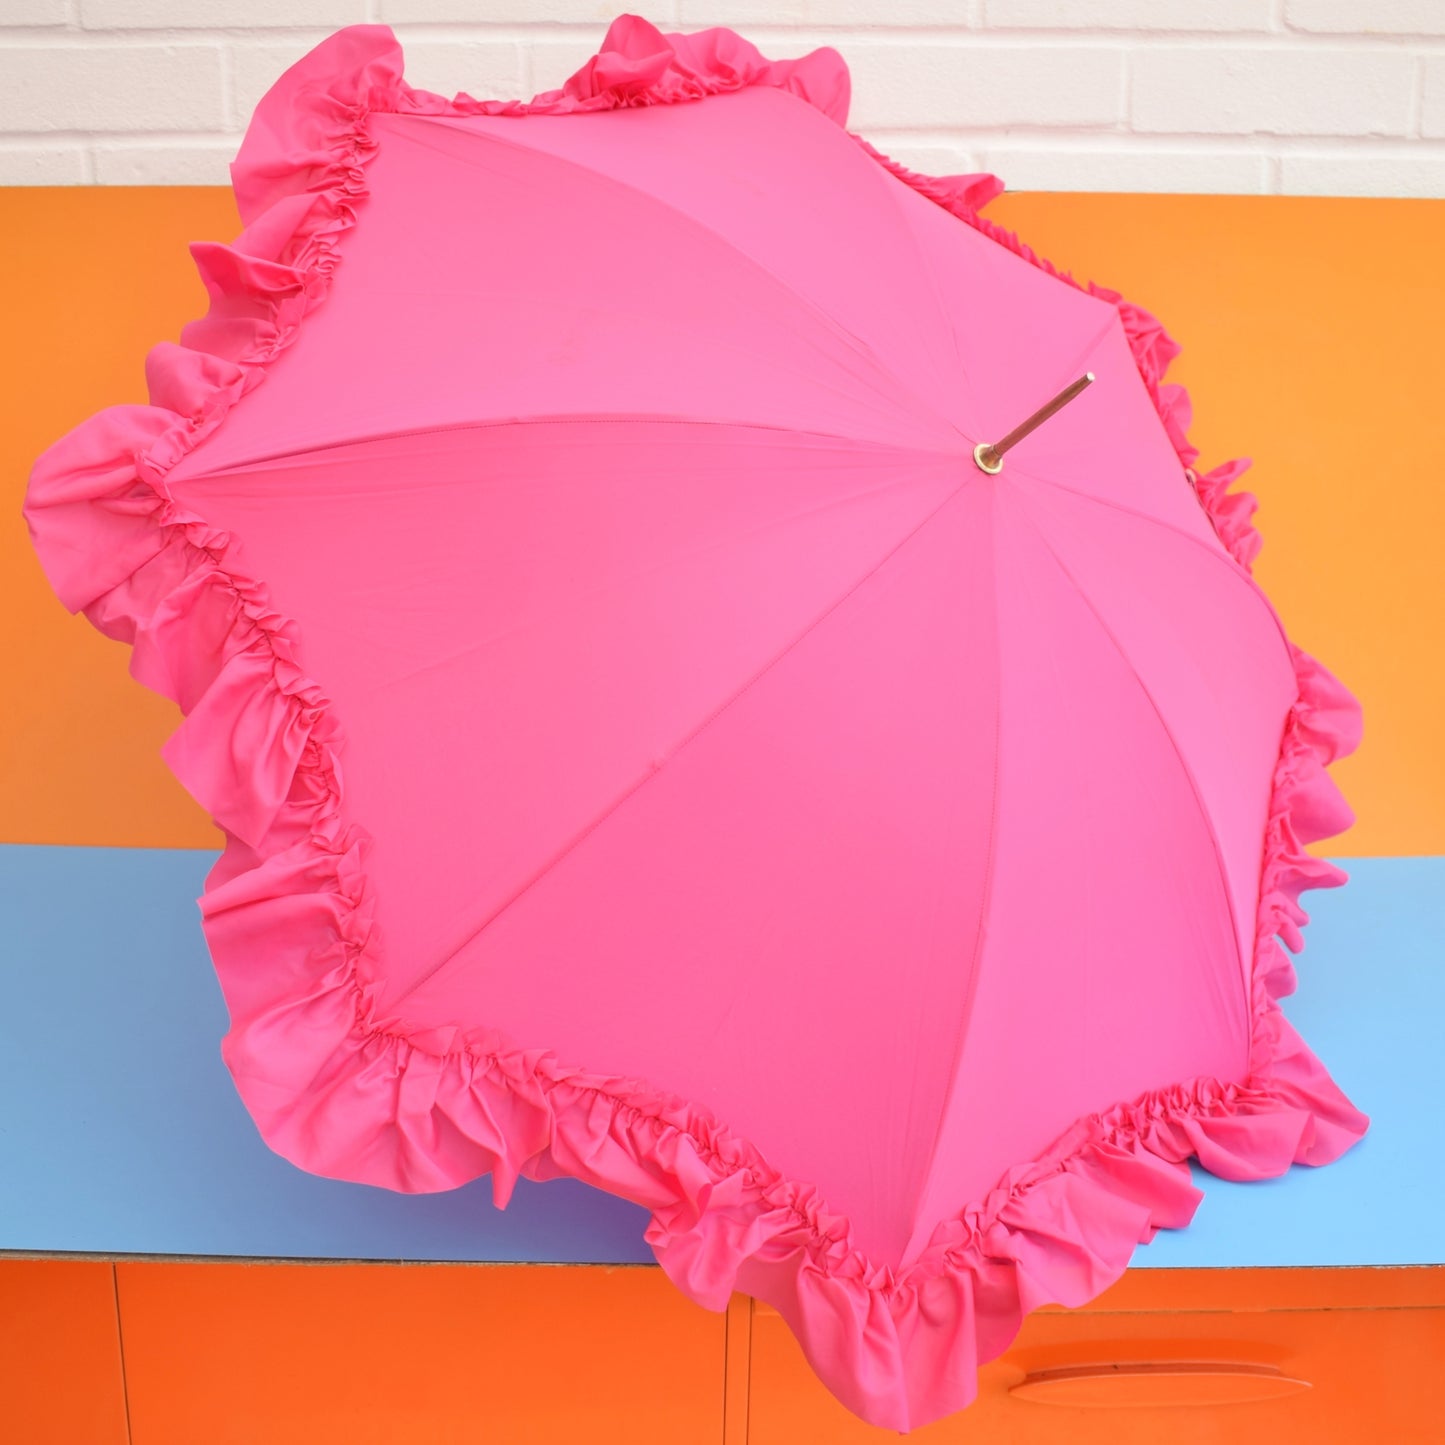 Vintage 1960s Umbrella / Parasol - Frilled - Pink